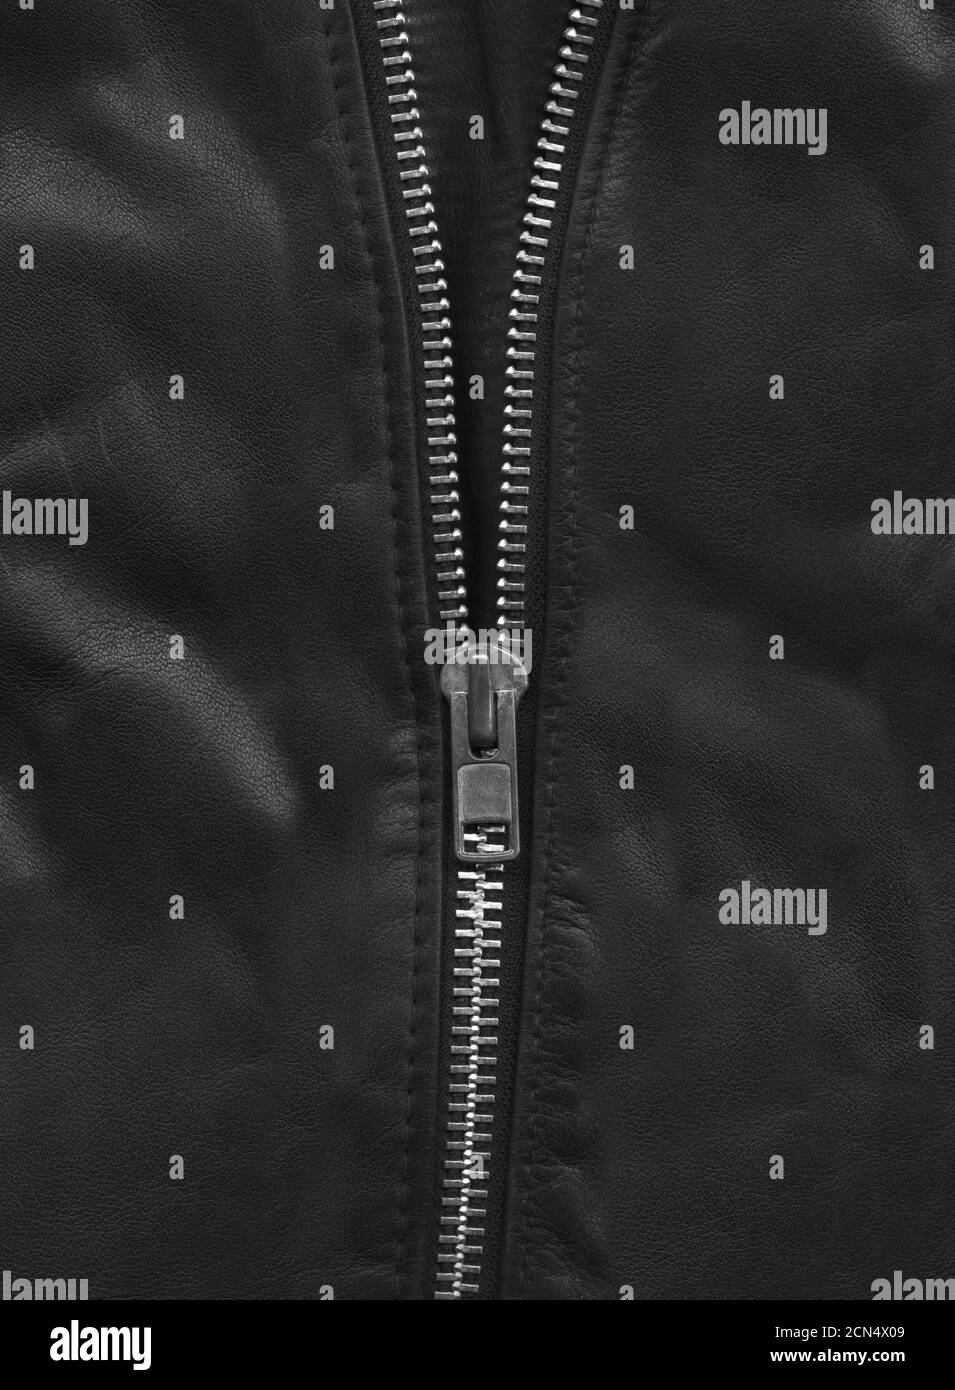 Black leather jacket close-up Stock Photo